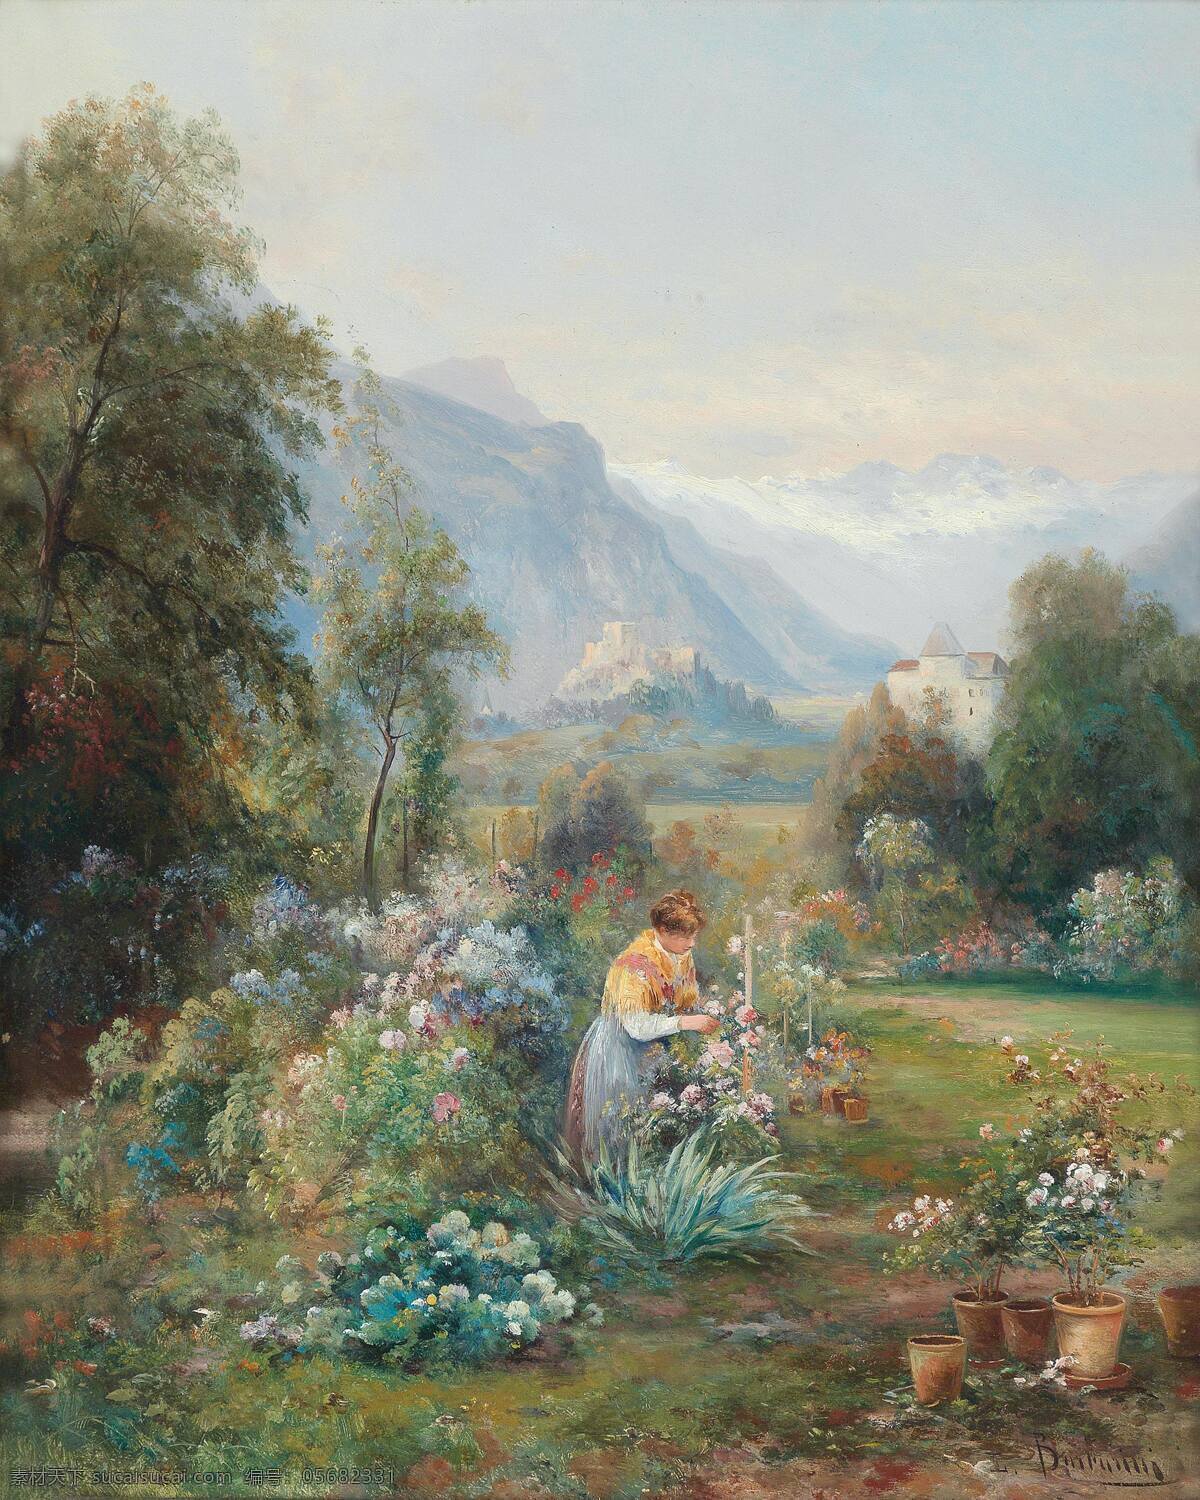 春分 露天花园 妇人 整理花草 远处雪山 19世纪油画 油画 文化艺术 绘画书法